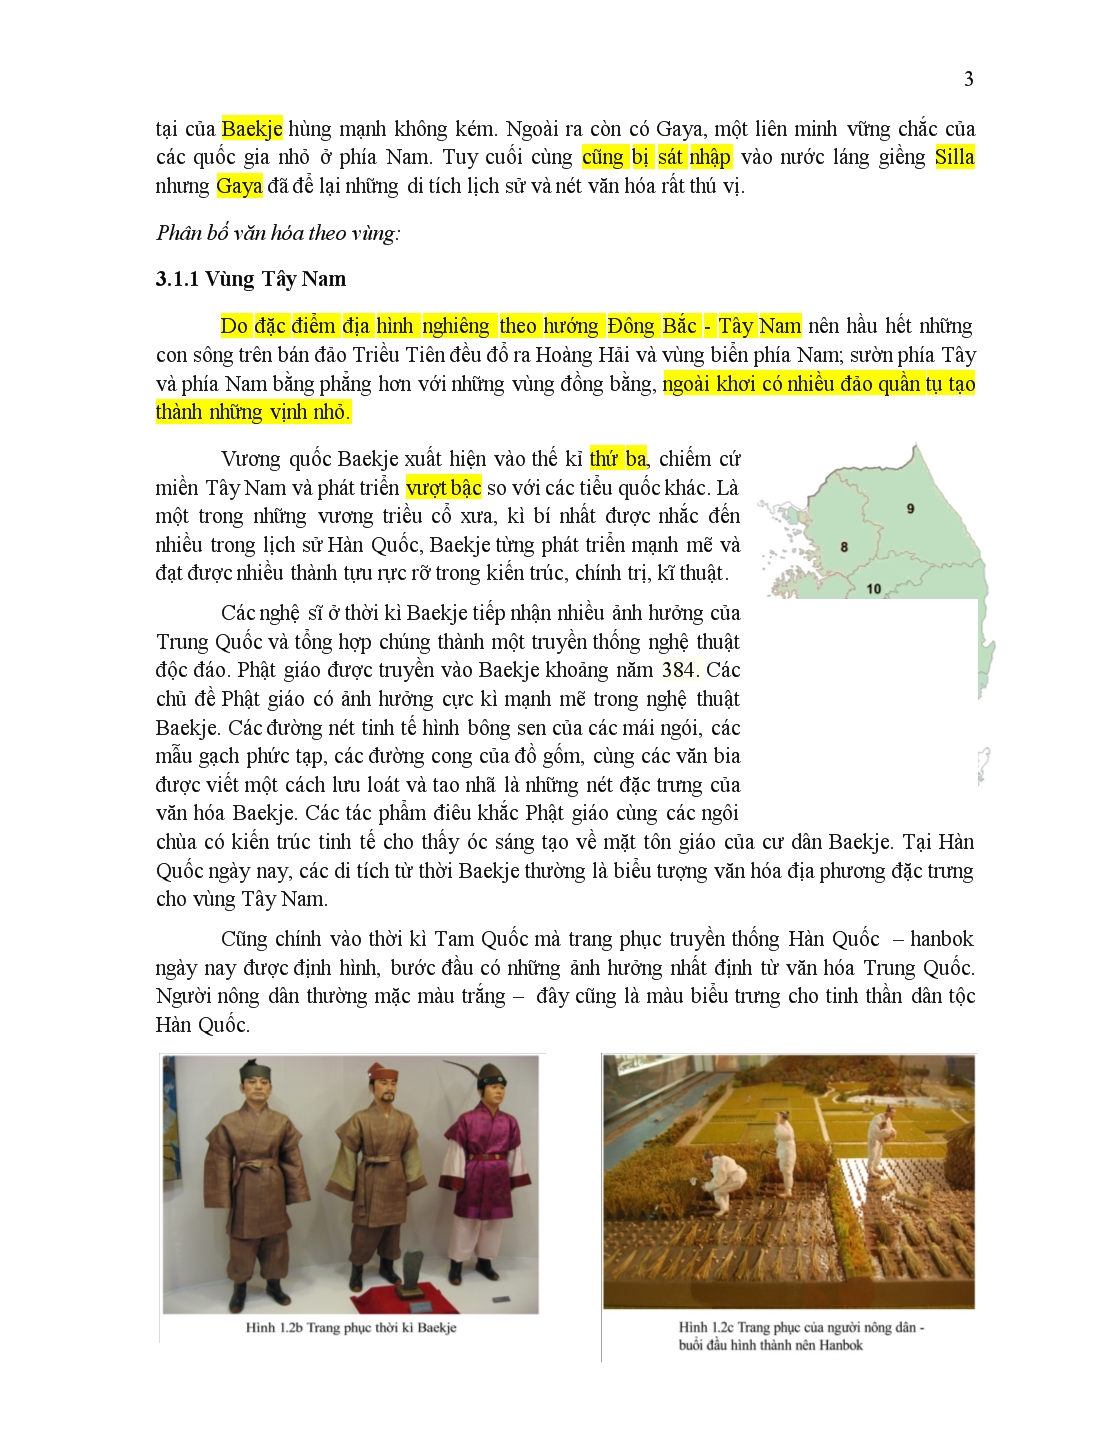 Phân bố văn hóa Hàn Quốc trang 3